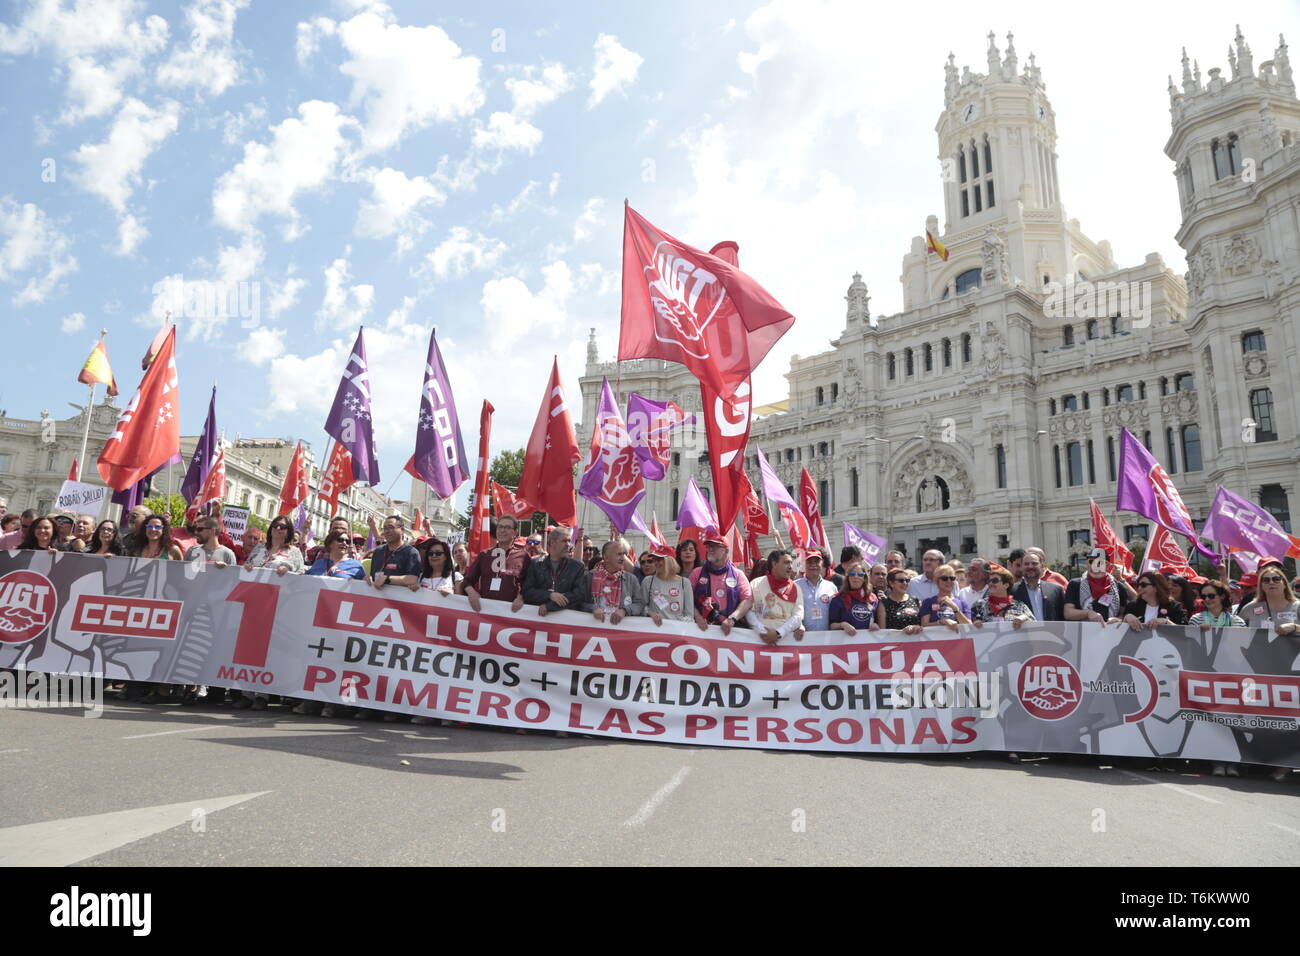 Die Demonstranten werden gesehen, halten ein Banner und Flaggen während der Demonstration. Tausende von Demonstranten auf den Internationalen Tag der Arbeit zeigen, einberufen von der Mehrheit Gewerkschaften UGT und CCOO Politiken und den Abbau der Arbeitslosigkeit in Spanien zu fordern, gegen die Unsicherheit der Beschäftigung und der Arbeitsrechte. Politiker der PSOE und der podemos haben an der Demonstration teilgenommen. Stockfoto